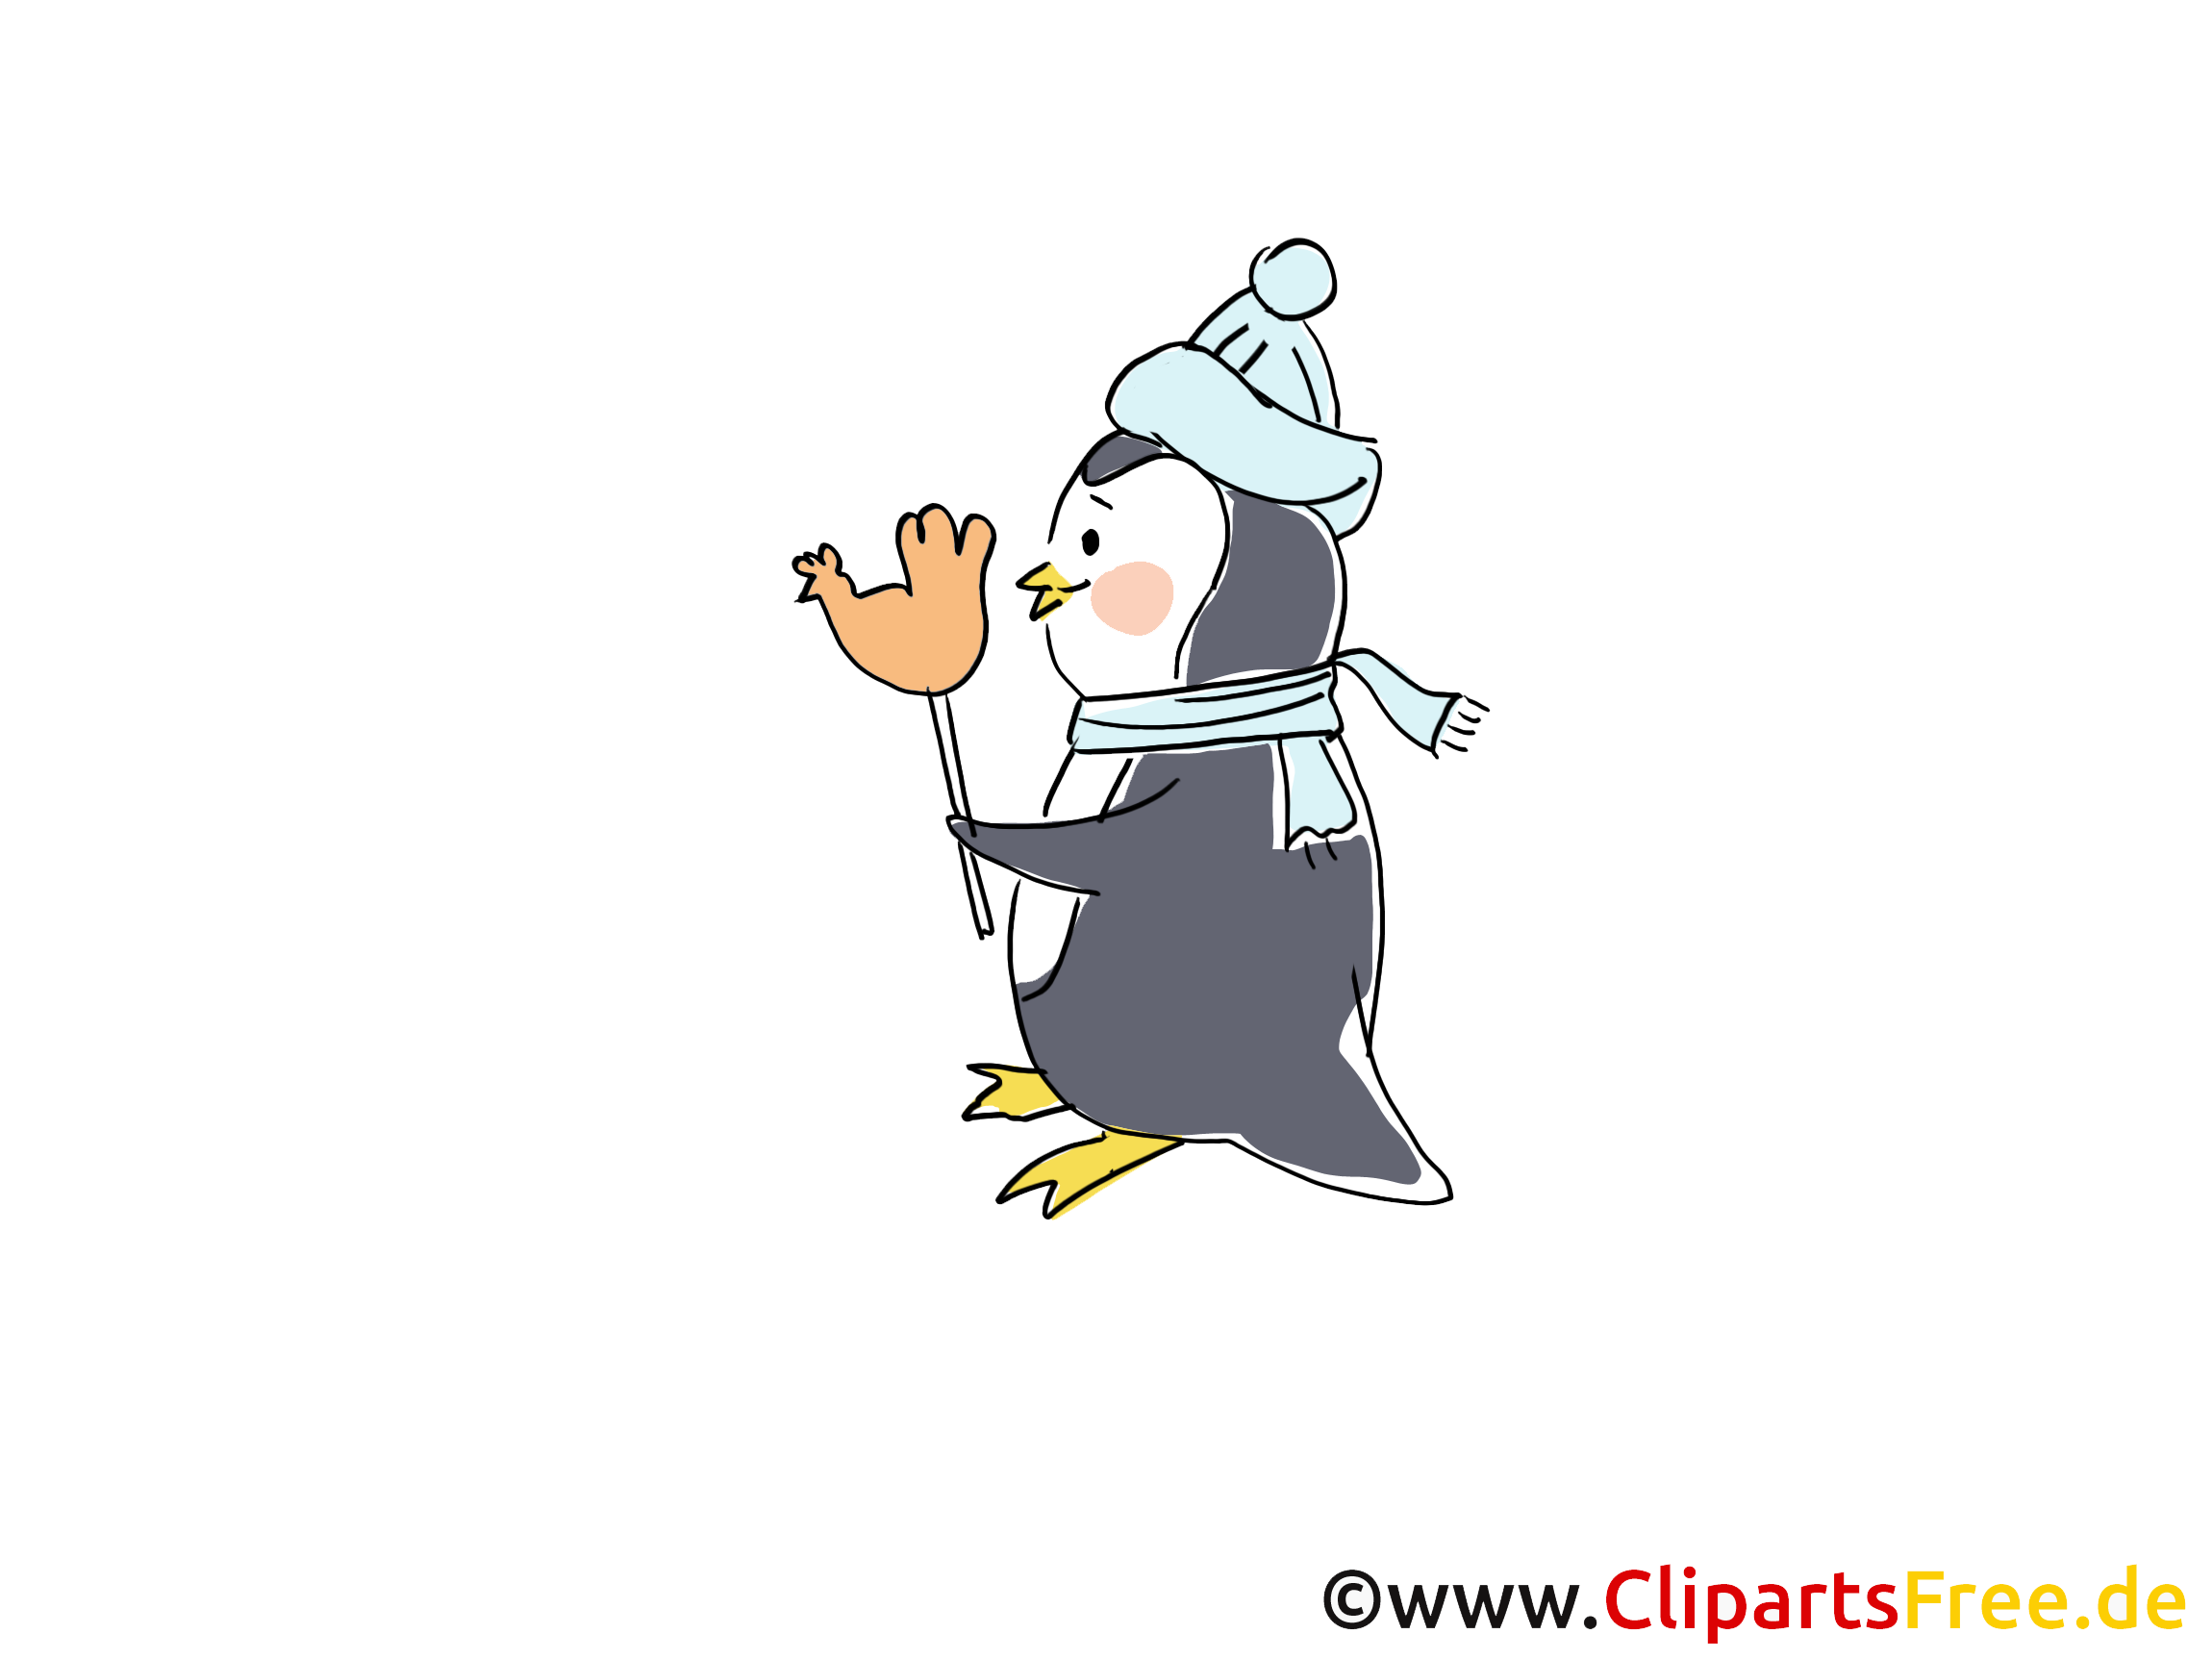 Pingouin clipart gratuit - Hiver images